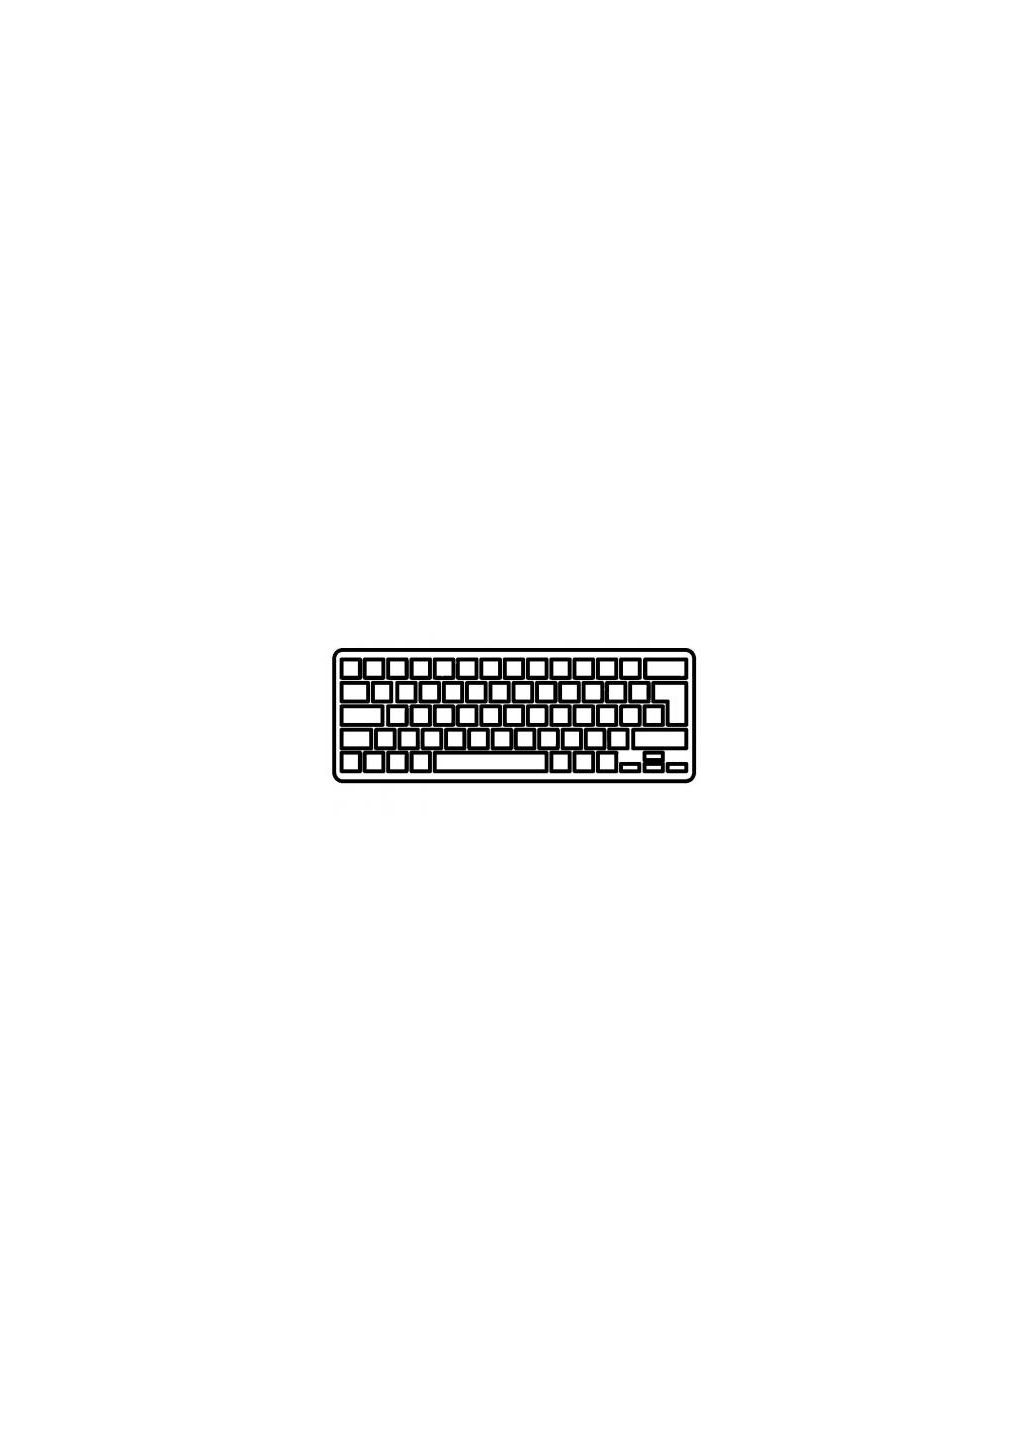 Клавиатура ноутбука Air 11.6 A1370,A1465 black,wo/frame,backlight RU/US (A46037) Apple air 11.6 a1370, a1465 black, wo/frame, backlight ru/u (276706522)